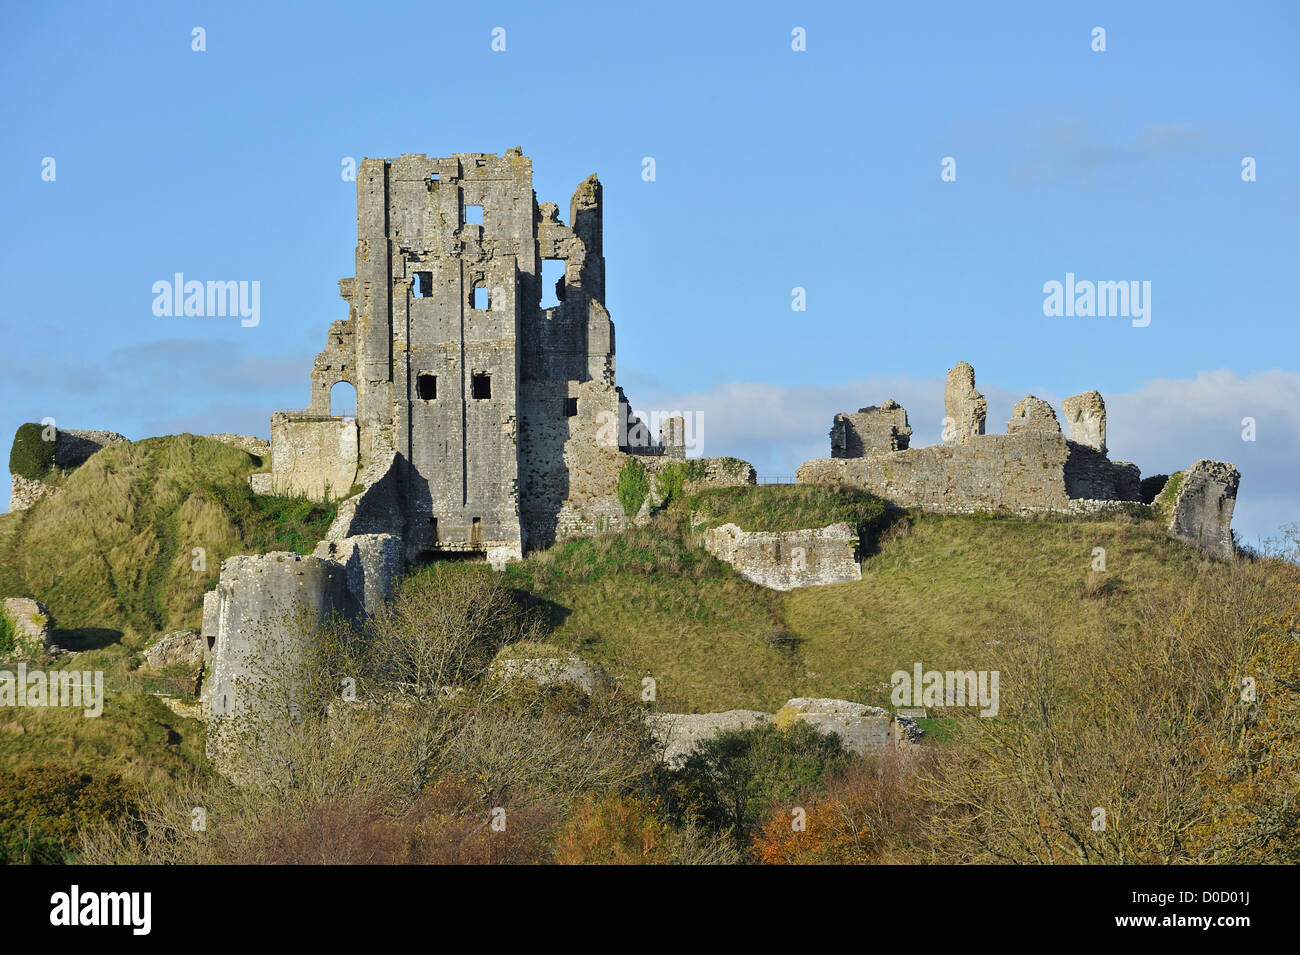 Ruines du château de Corfe médiévale sur l'île de Purbeck le long de la côte jurassique du Dorset, dans le sud de l'Angleterre, Royaume-Uni Banque D'Images